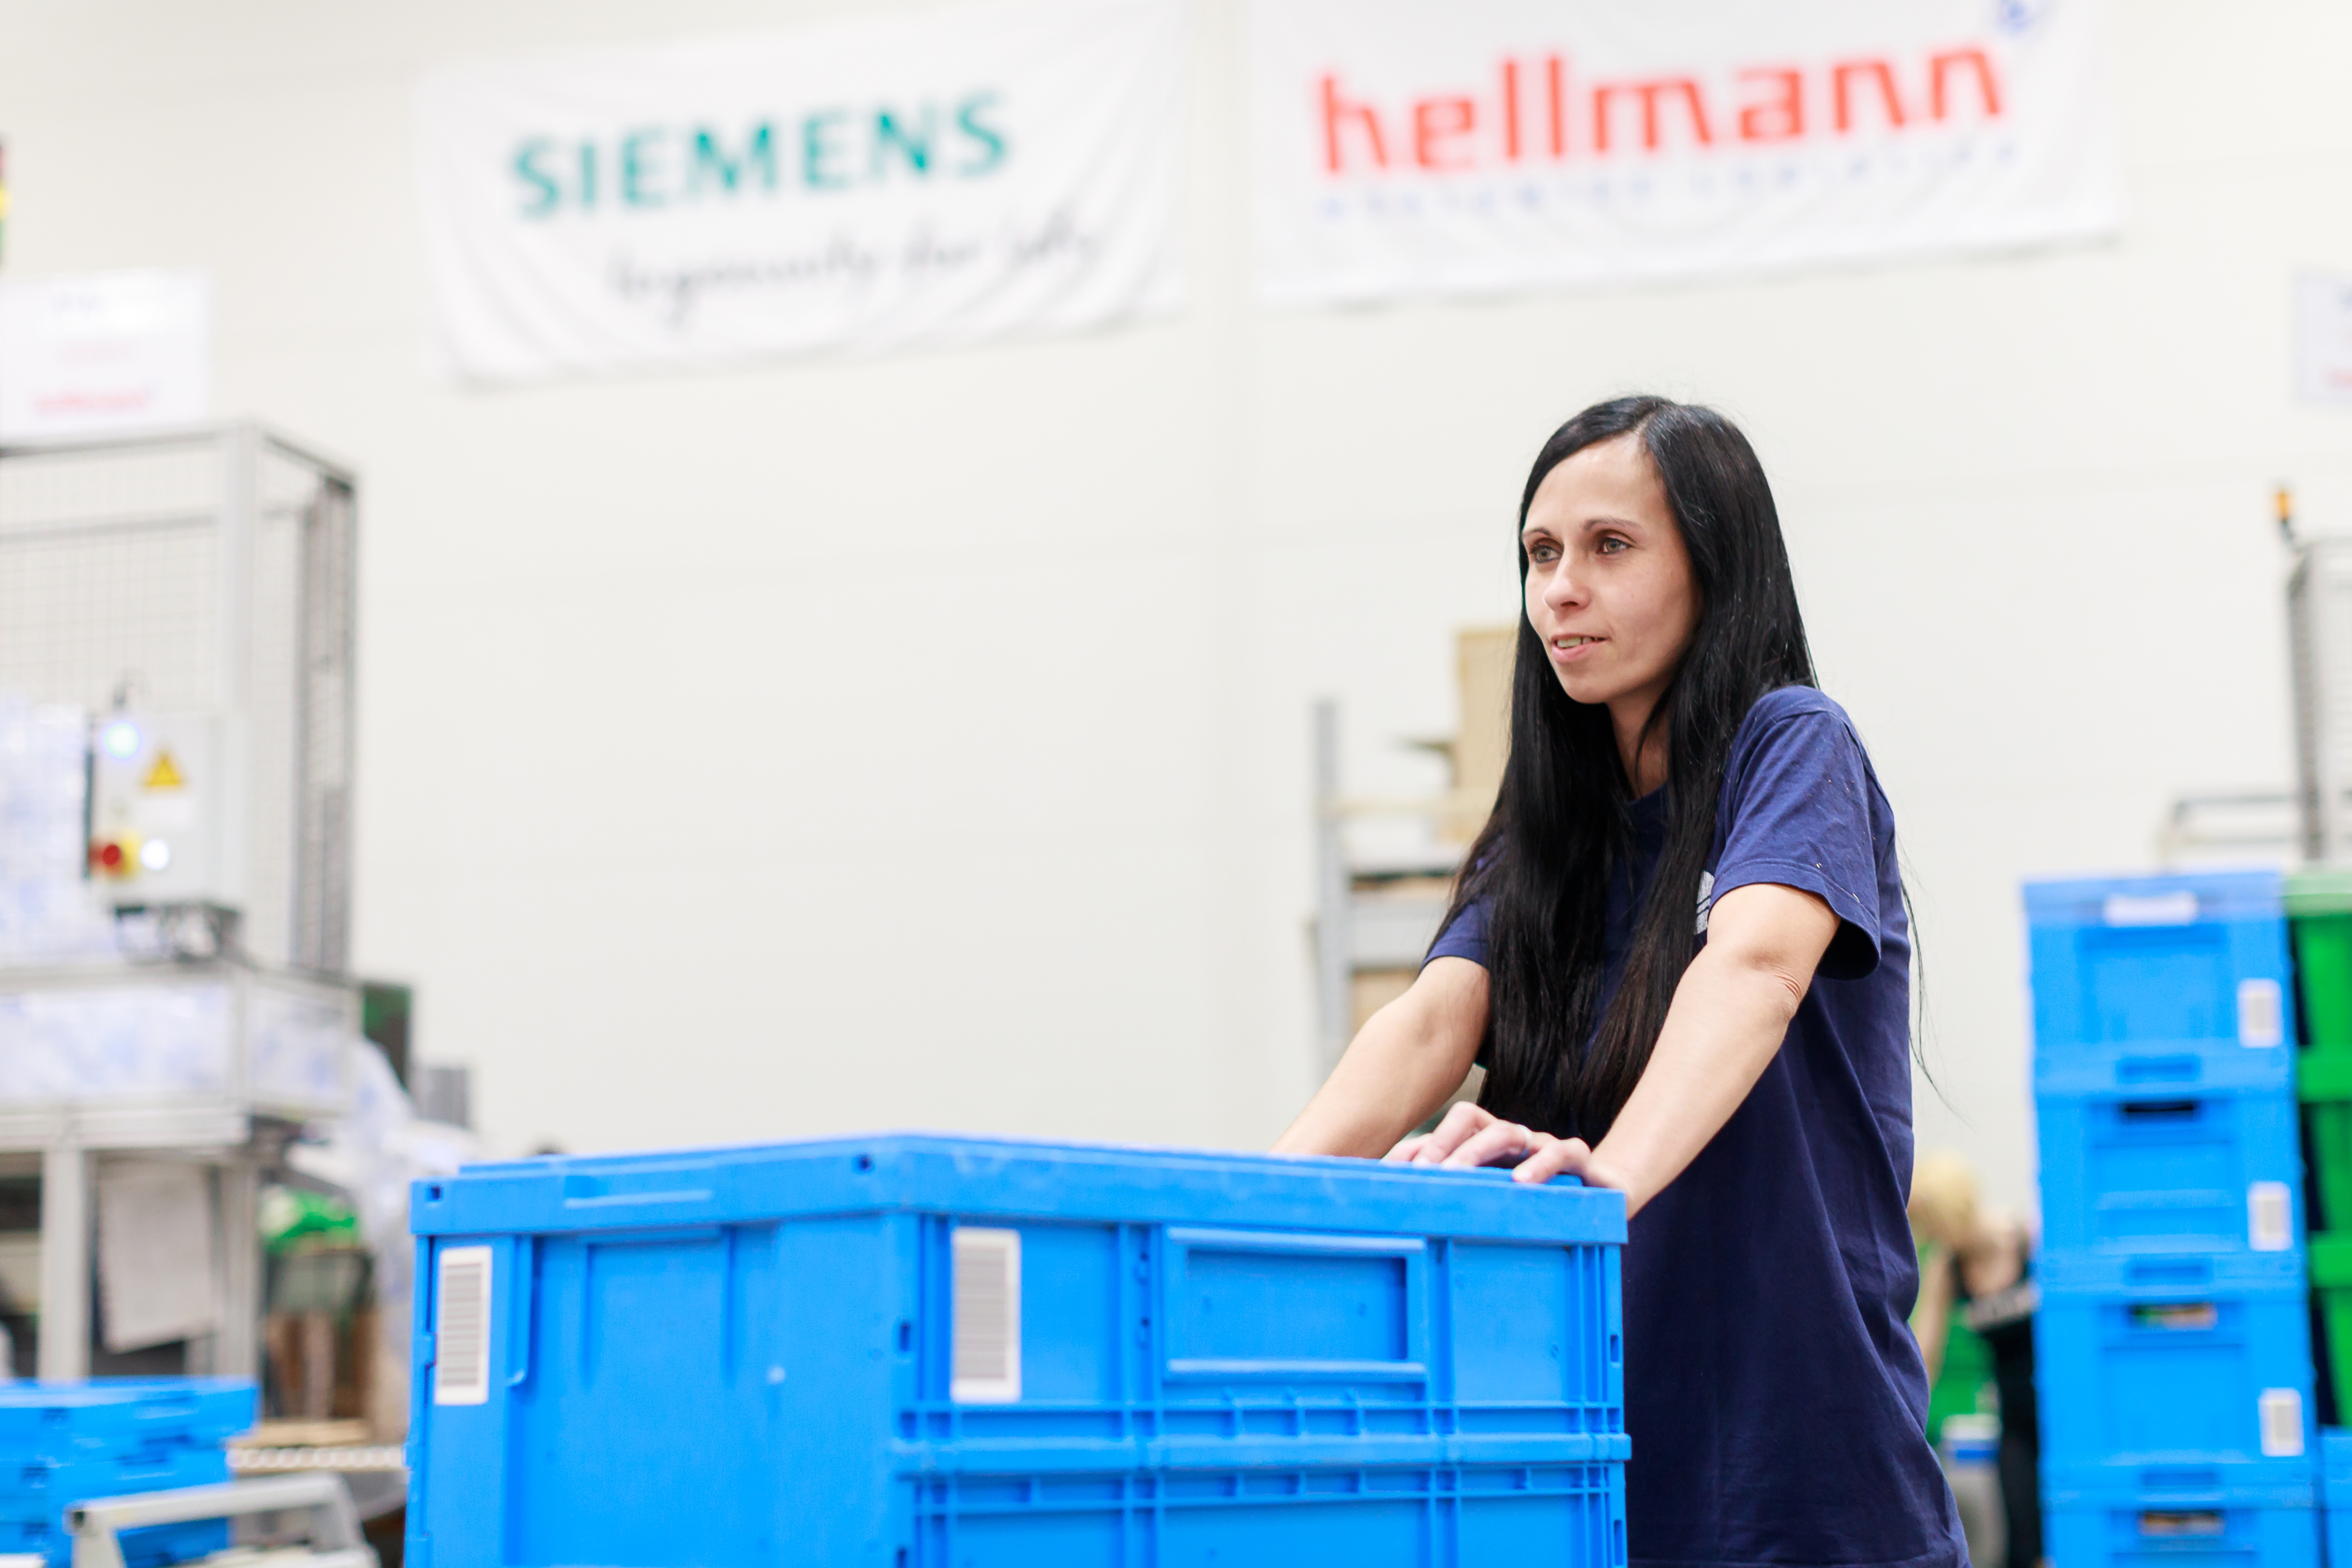 Hellmann bleibt Kontraktlogistik-Partner von Siemens in Tschechien